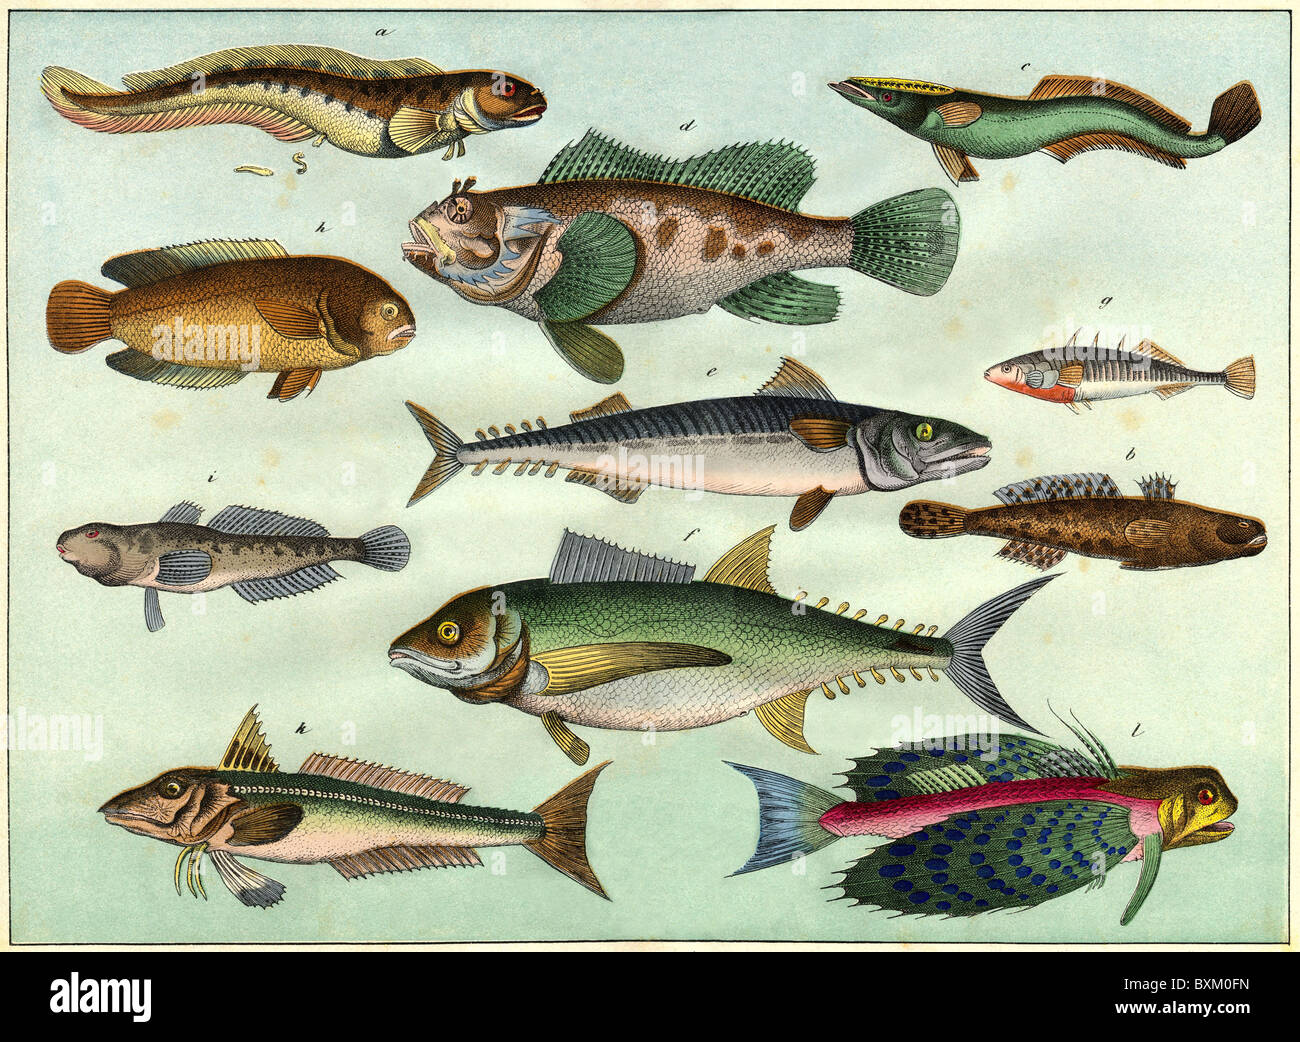 zoologie / Tiere, Fische, dekorative Lithographie mit verschiedenen  Fischarten, Deutschland, 1870, Additional-Rights-Clearences-not available  Stockfotografie - Alamy